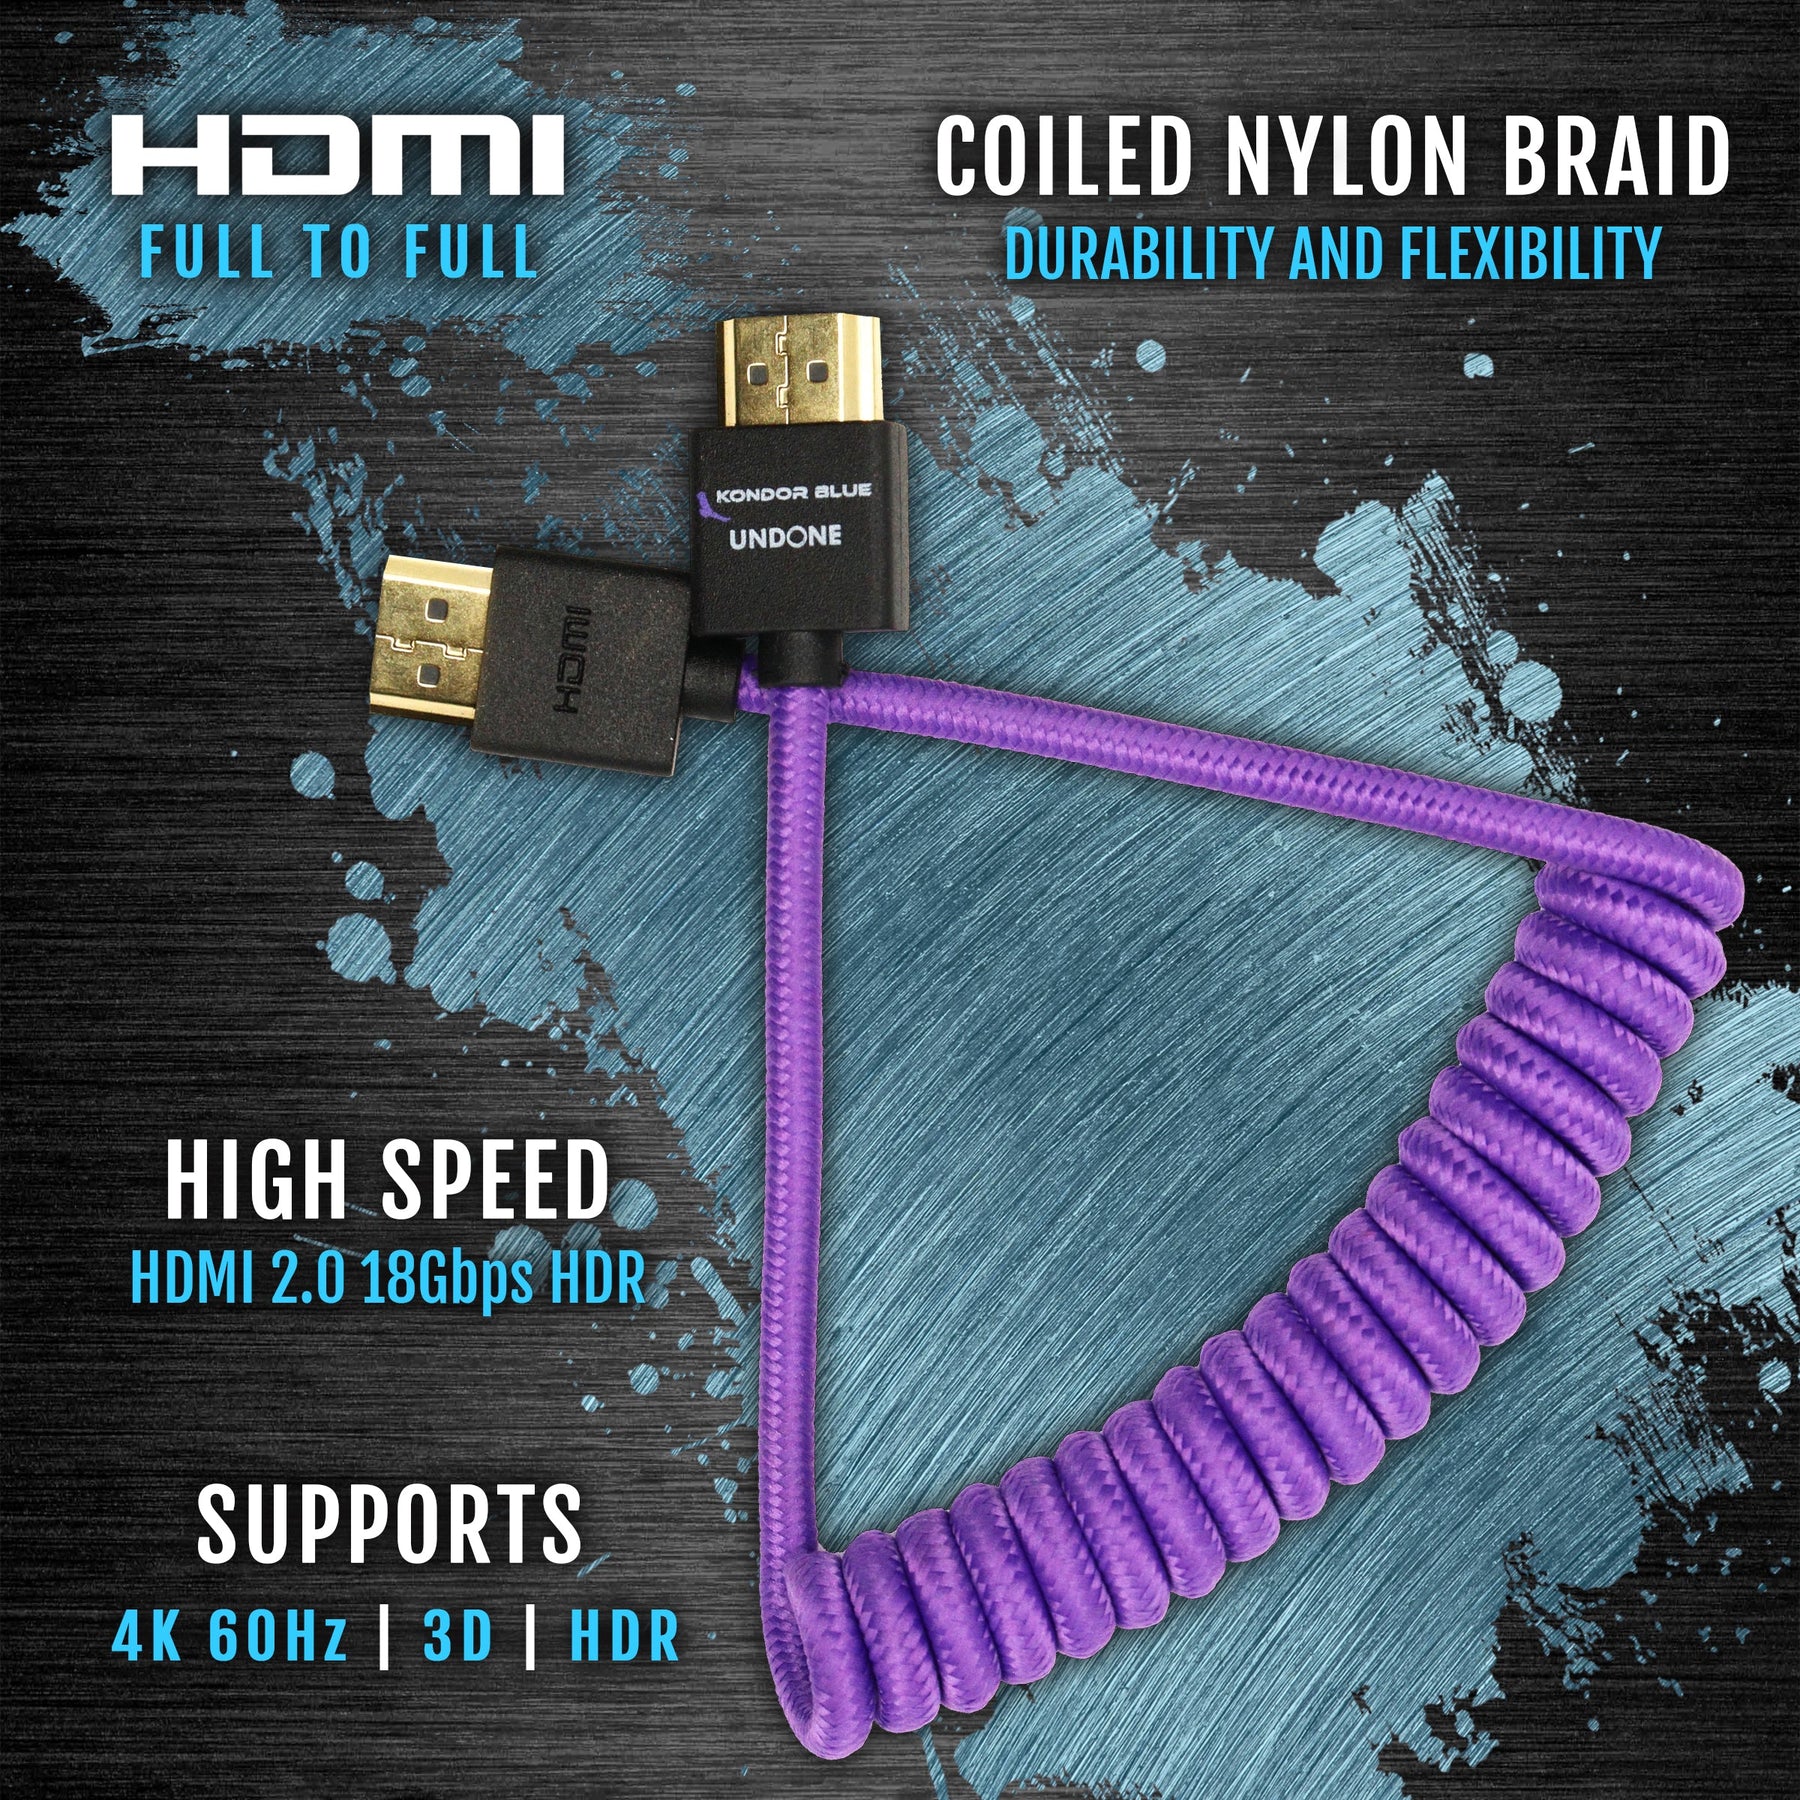 Câble HDMI double Afterglow 1m80 bleu et vert